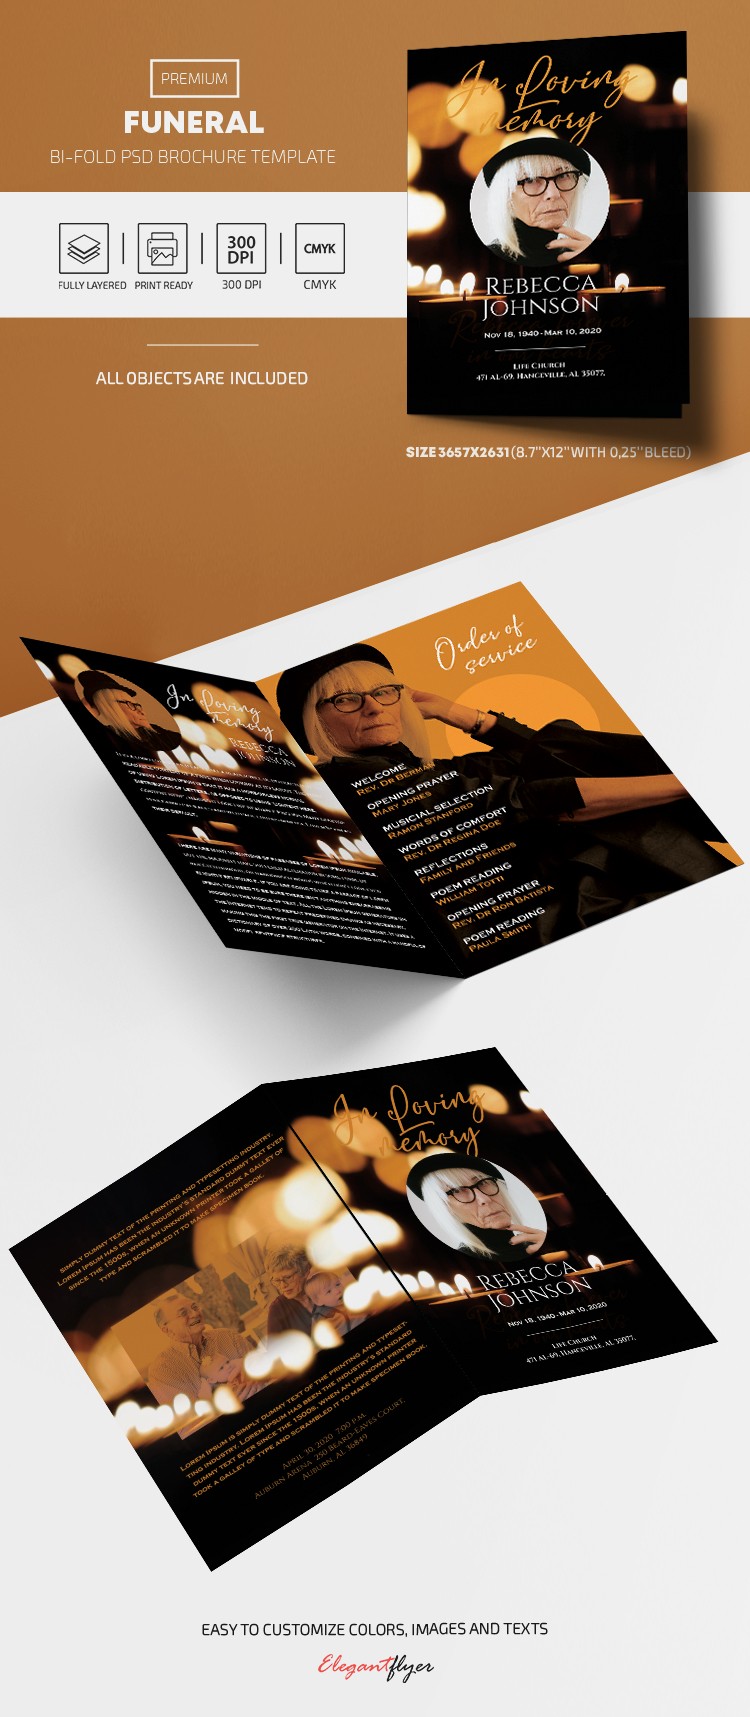 Funeral Program Bi-Fold Brochure by ElegantFlyer